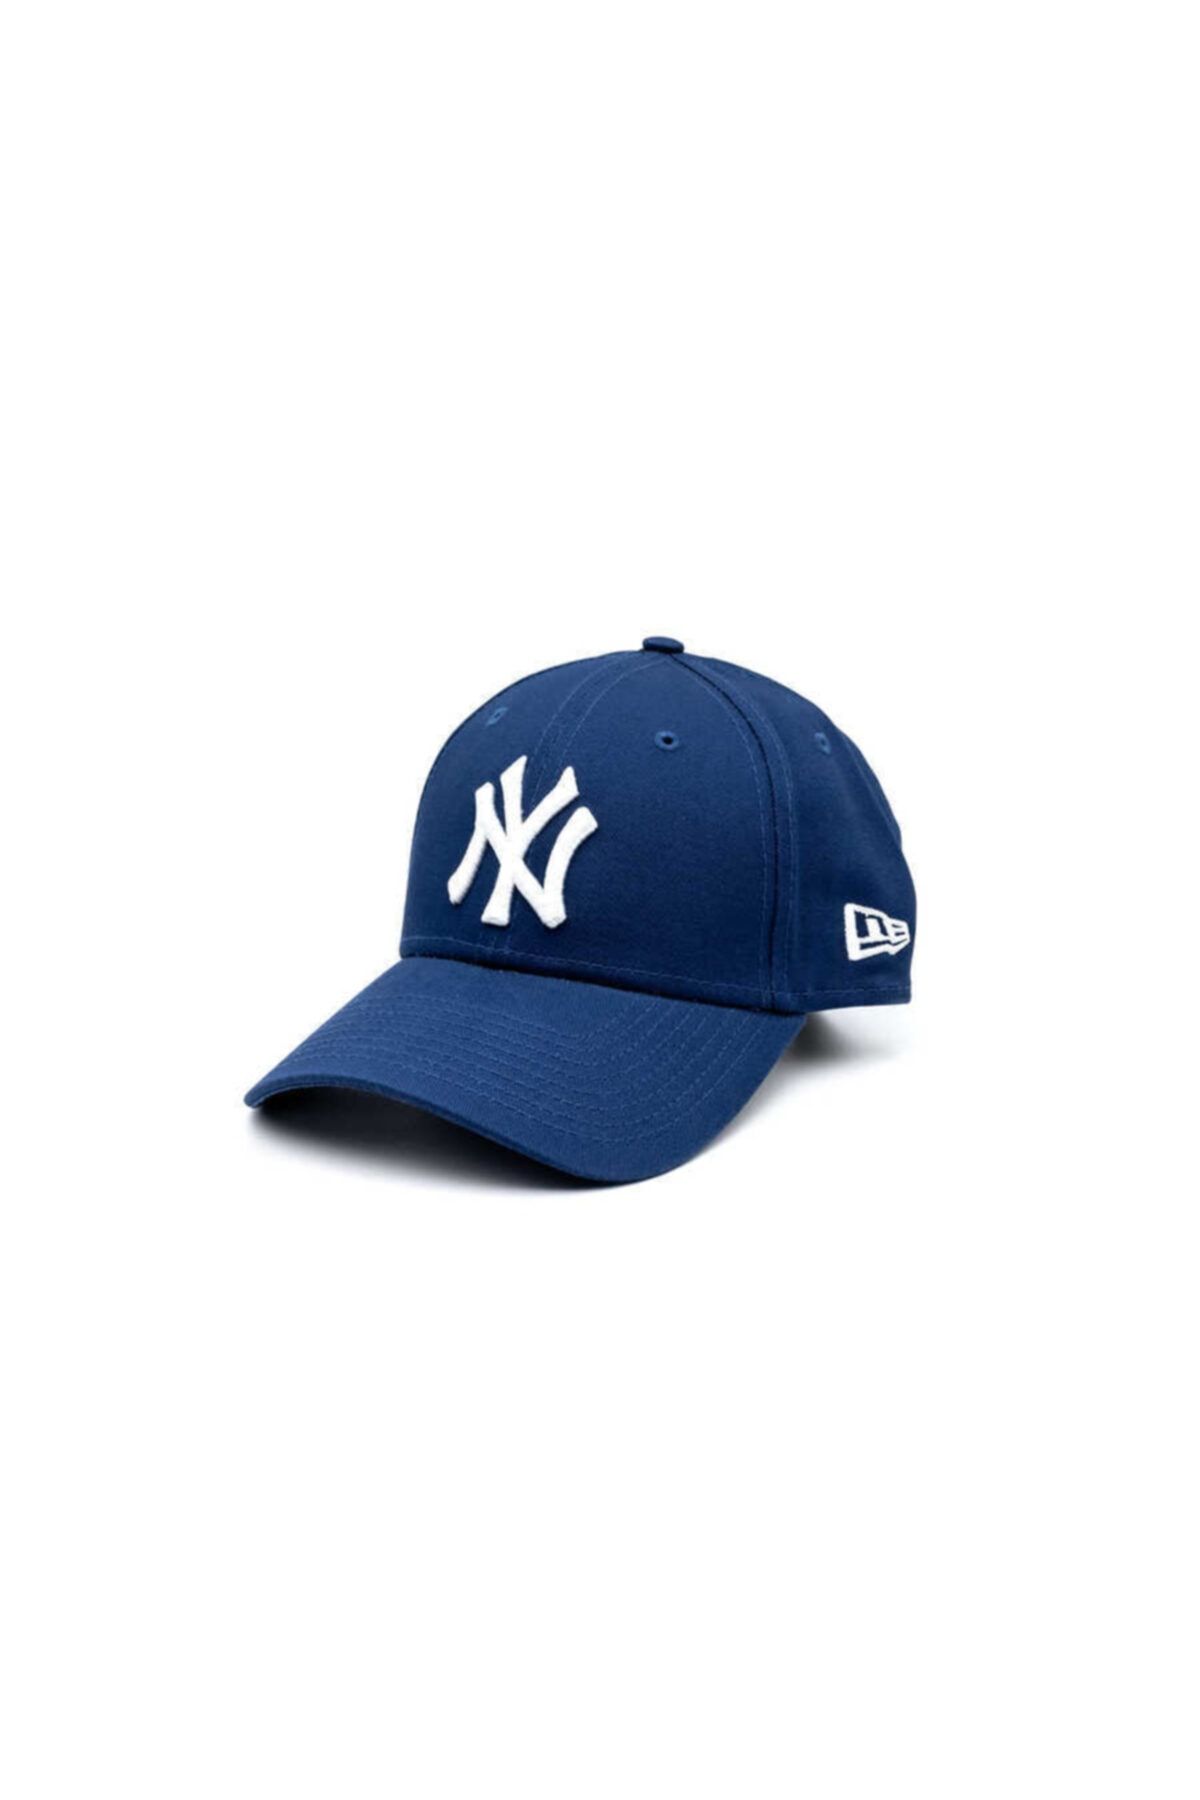 NEW ERA Şapka - 9forty League Basic New York Yankees Royal/optic White - Saks Mavi Unisex Şapka